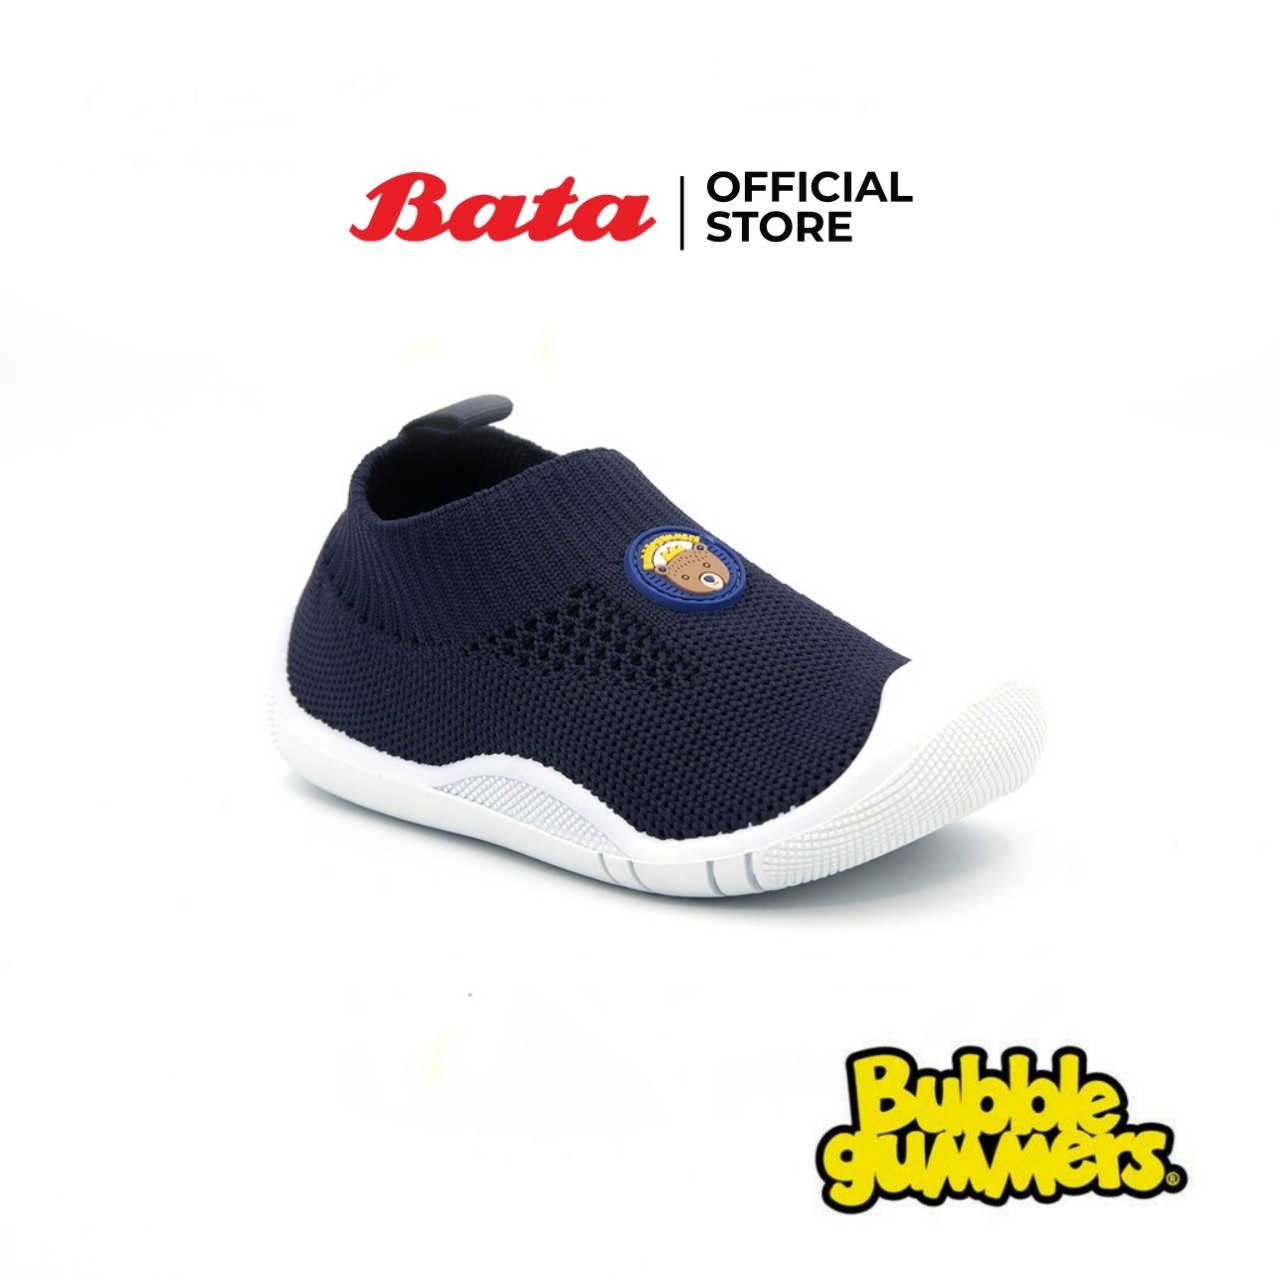 Bata BABY BUBBLES INFANT BOOTTIES รองเท้าหัดเดิน เด็กผู้ชาย แบบสวม สีกรมท่า รหัส 0599817 Boy Kids Fashion